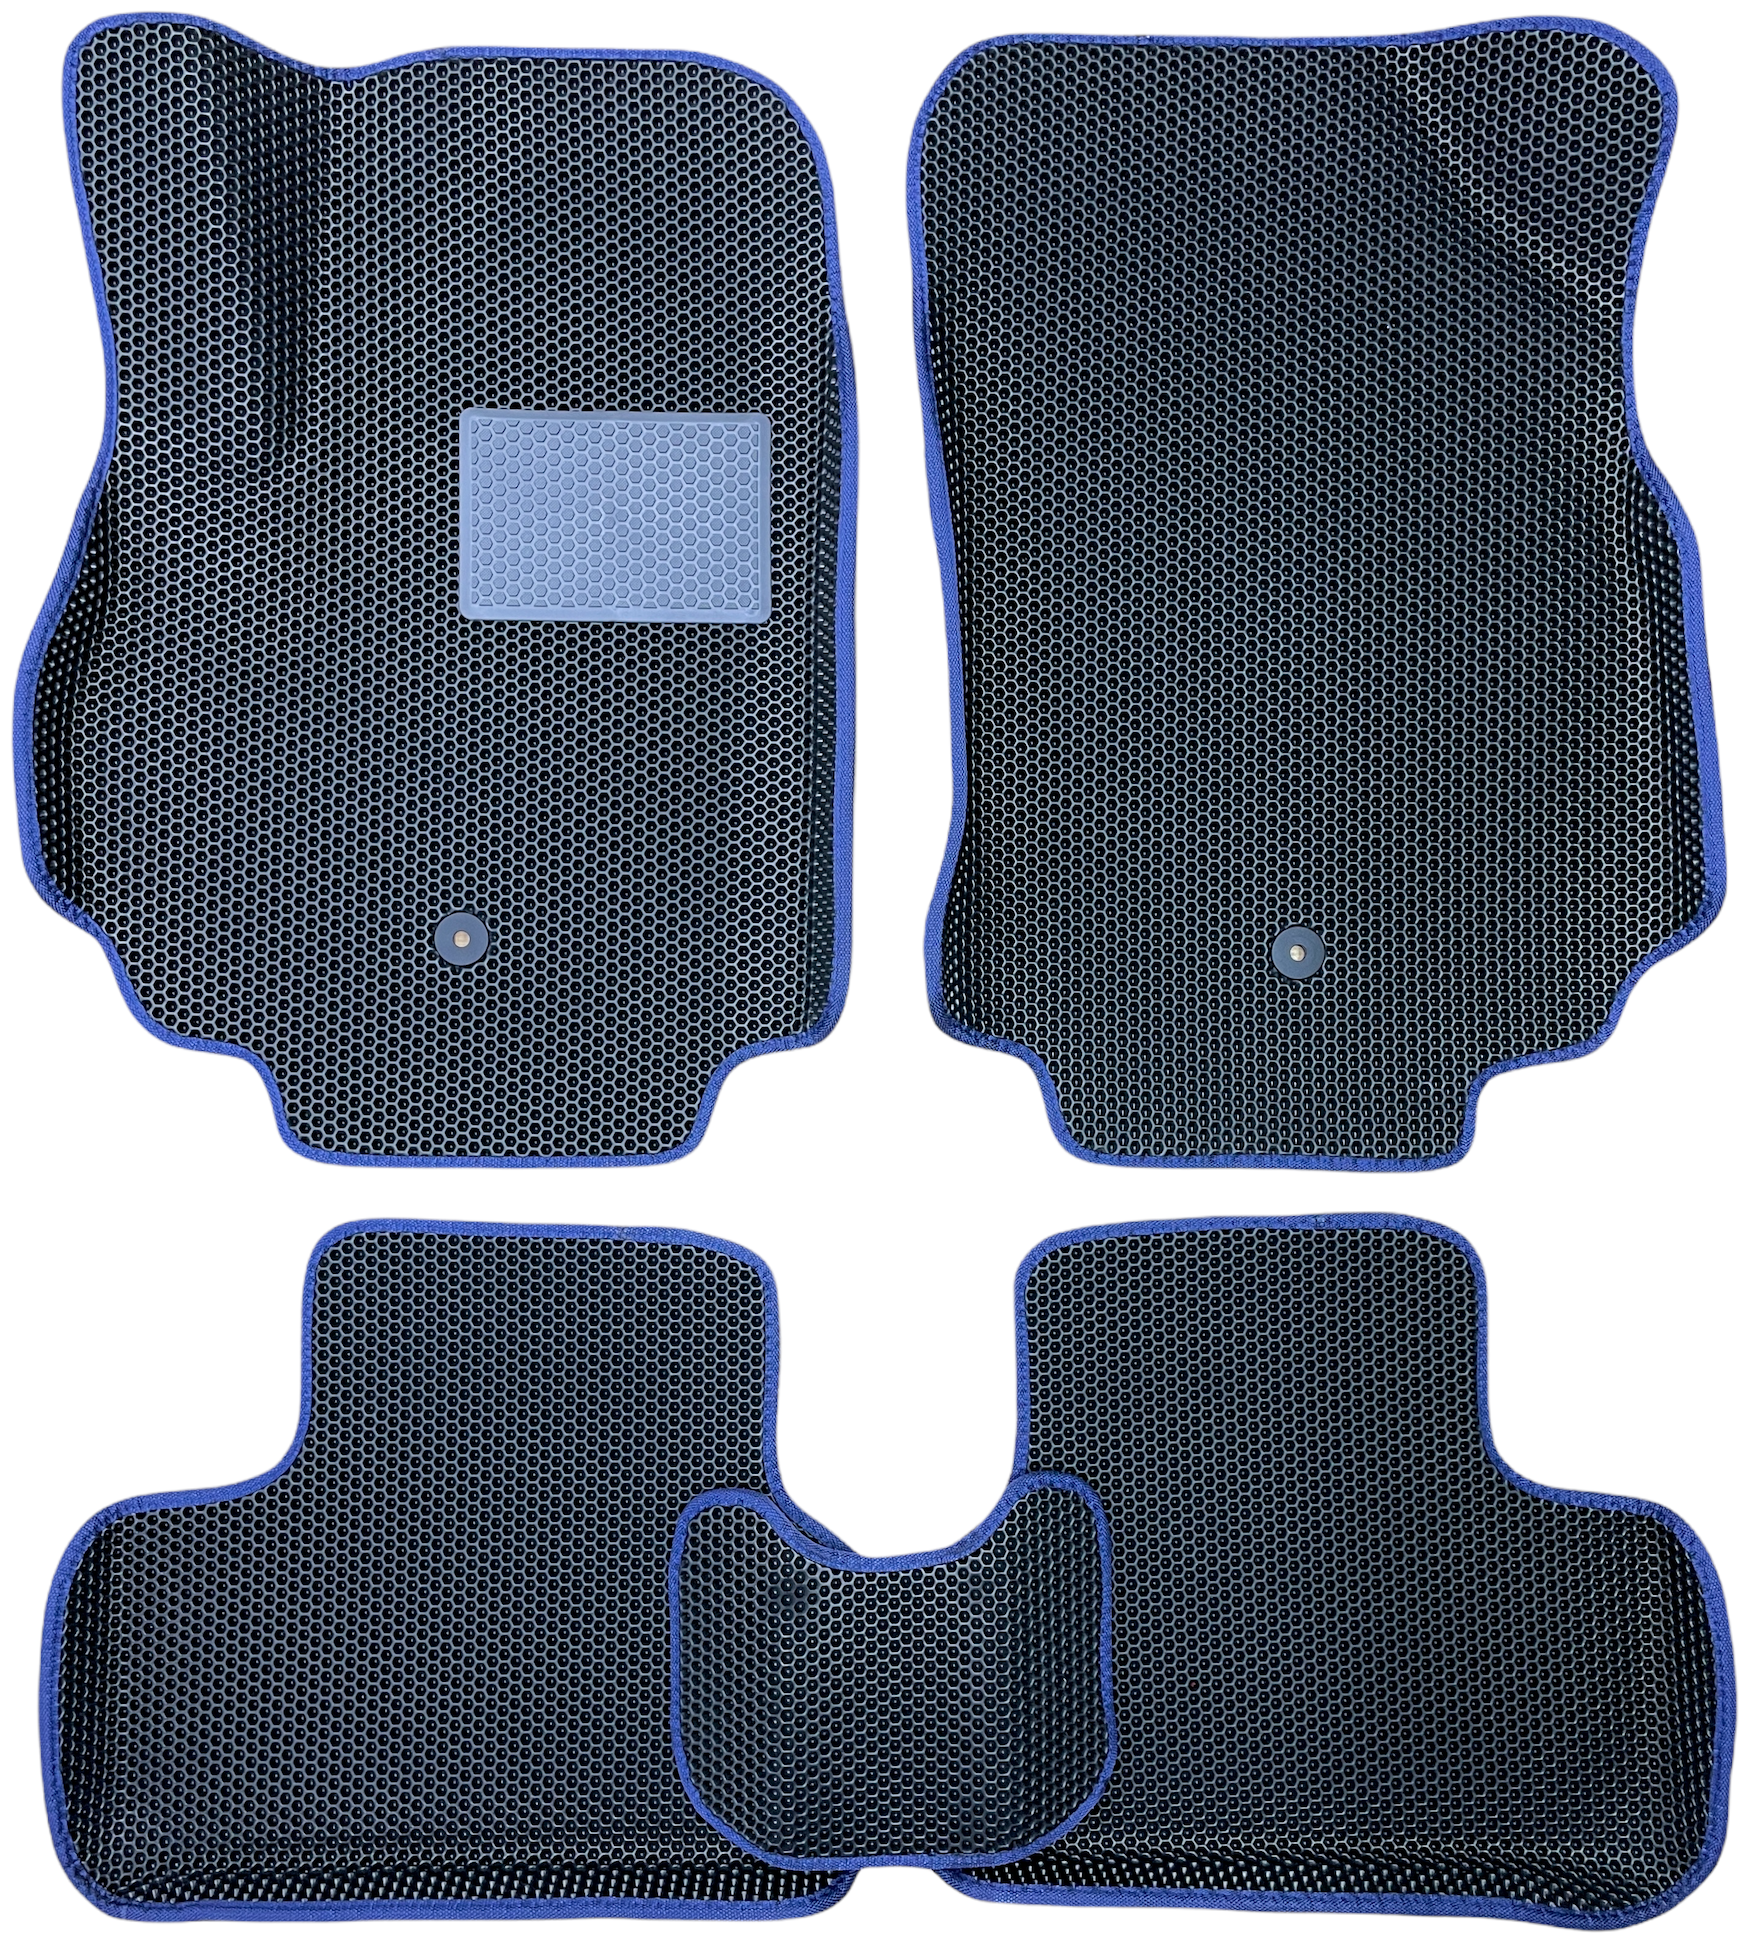 Автомобильные коврики ЕВА / EVA с бортами 3д / 3D для Land Cruiser Prado 120 2002-2009 / Тойота Ленд Крузер Прадо 120 черный(сота)-синий / резин подпятник